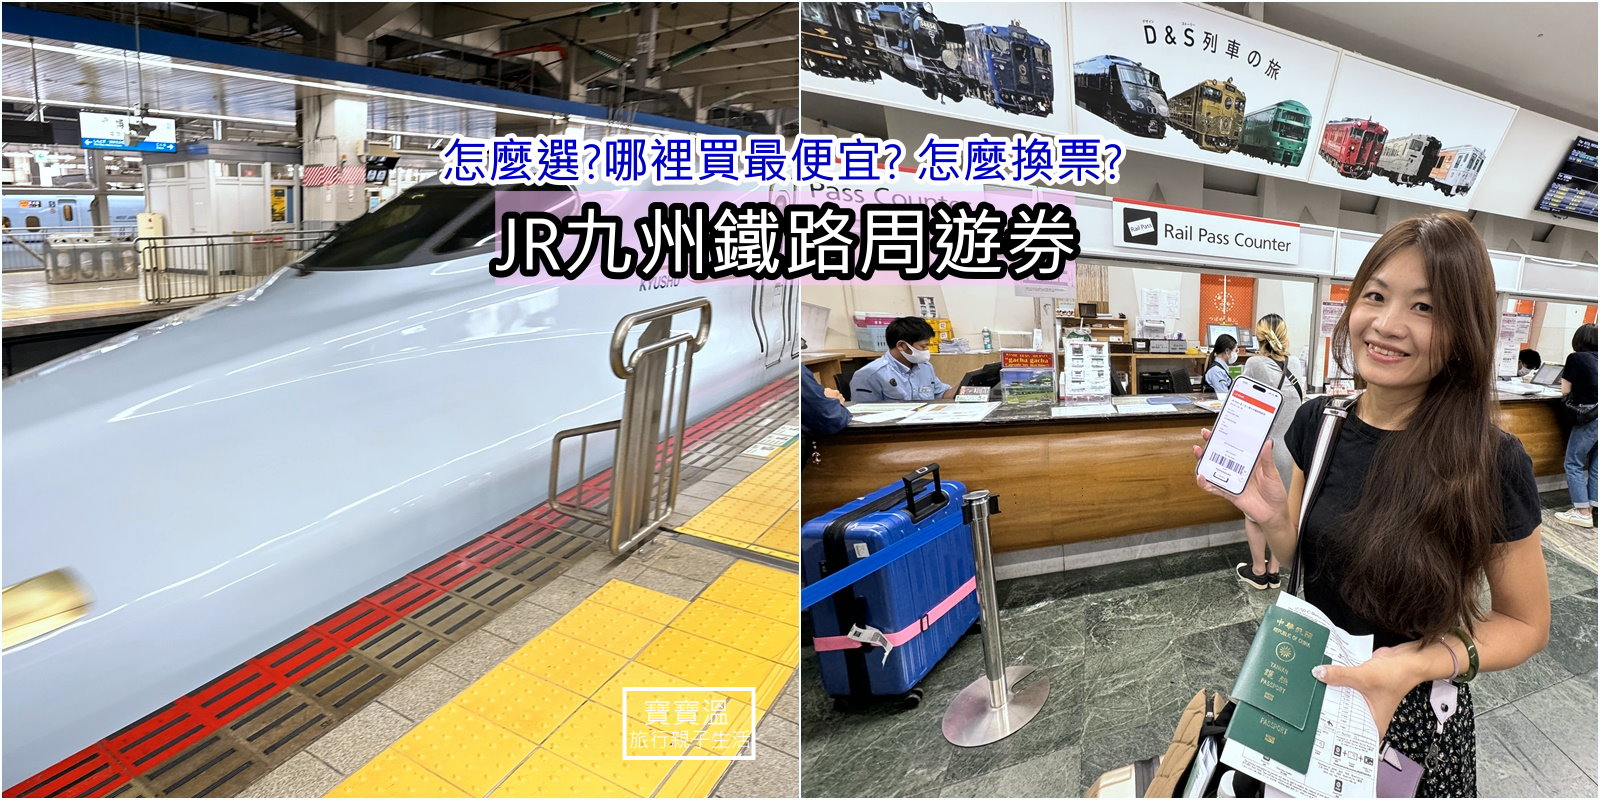 四種JR九州鐵路周遊券(九州JR PASS)怎麼選? 哪裡買最便宜? 到日本要怎麼換票?